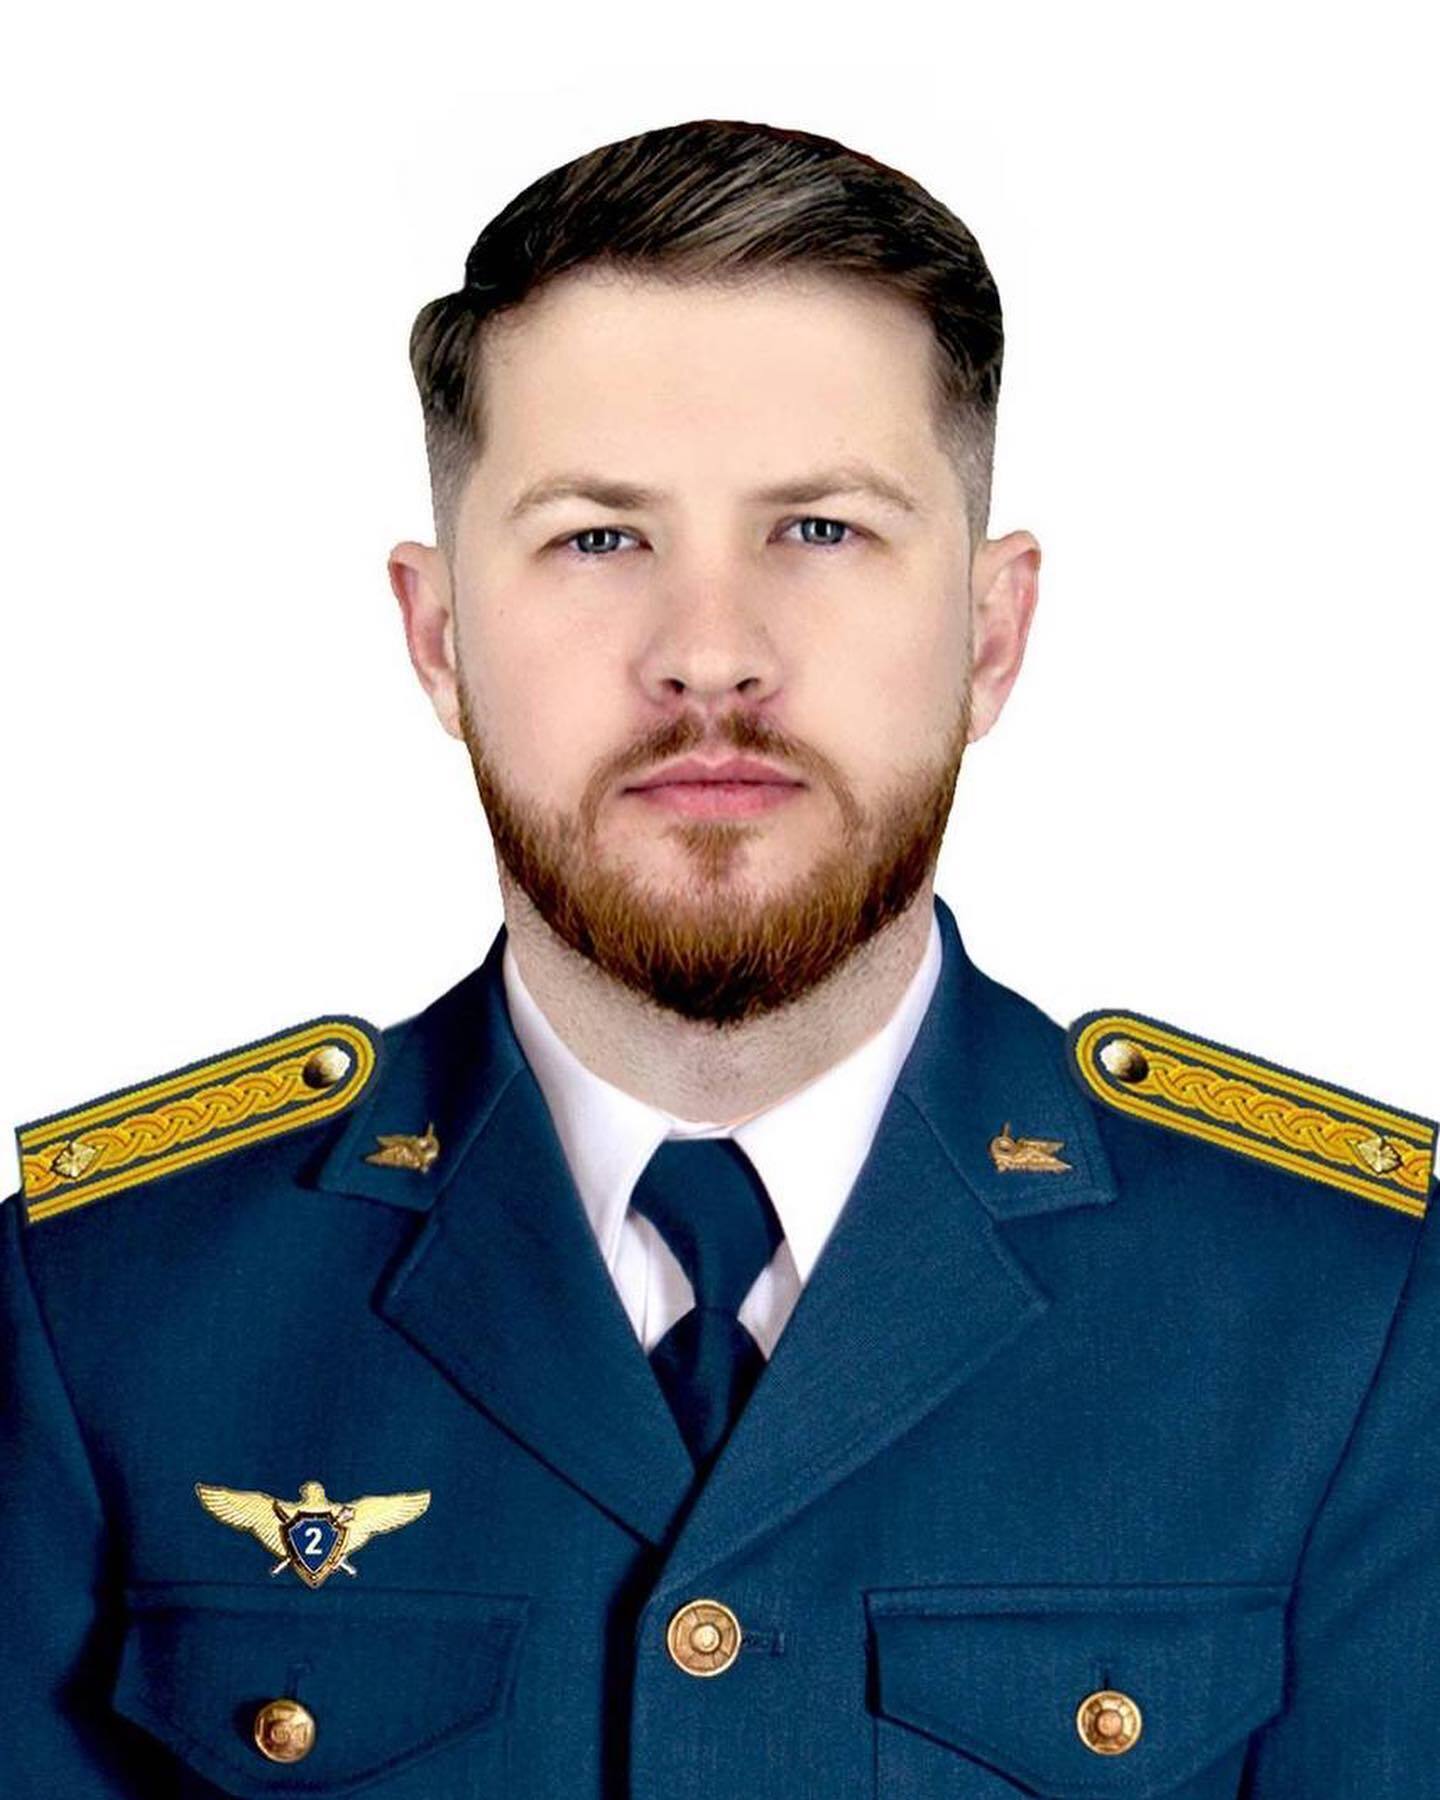 Рвався в бій, щоб захищати Україну: під час виконання завдання загинув пілот винищувача Владислав Савєльєв. Фото